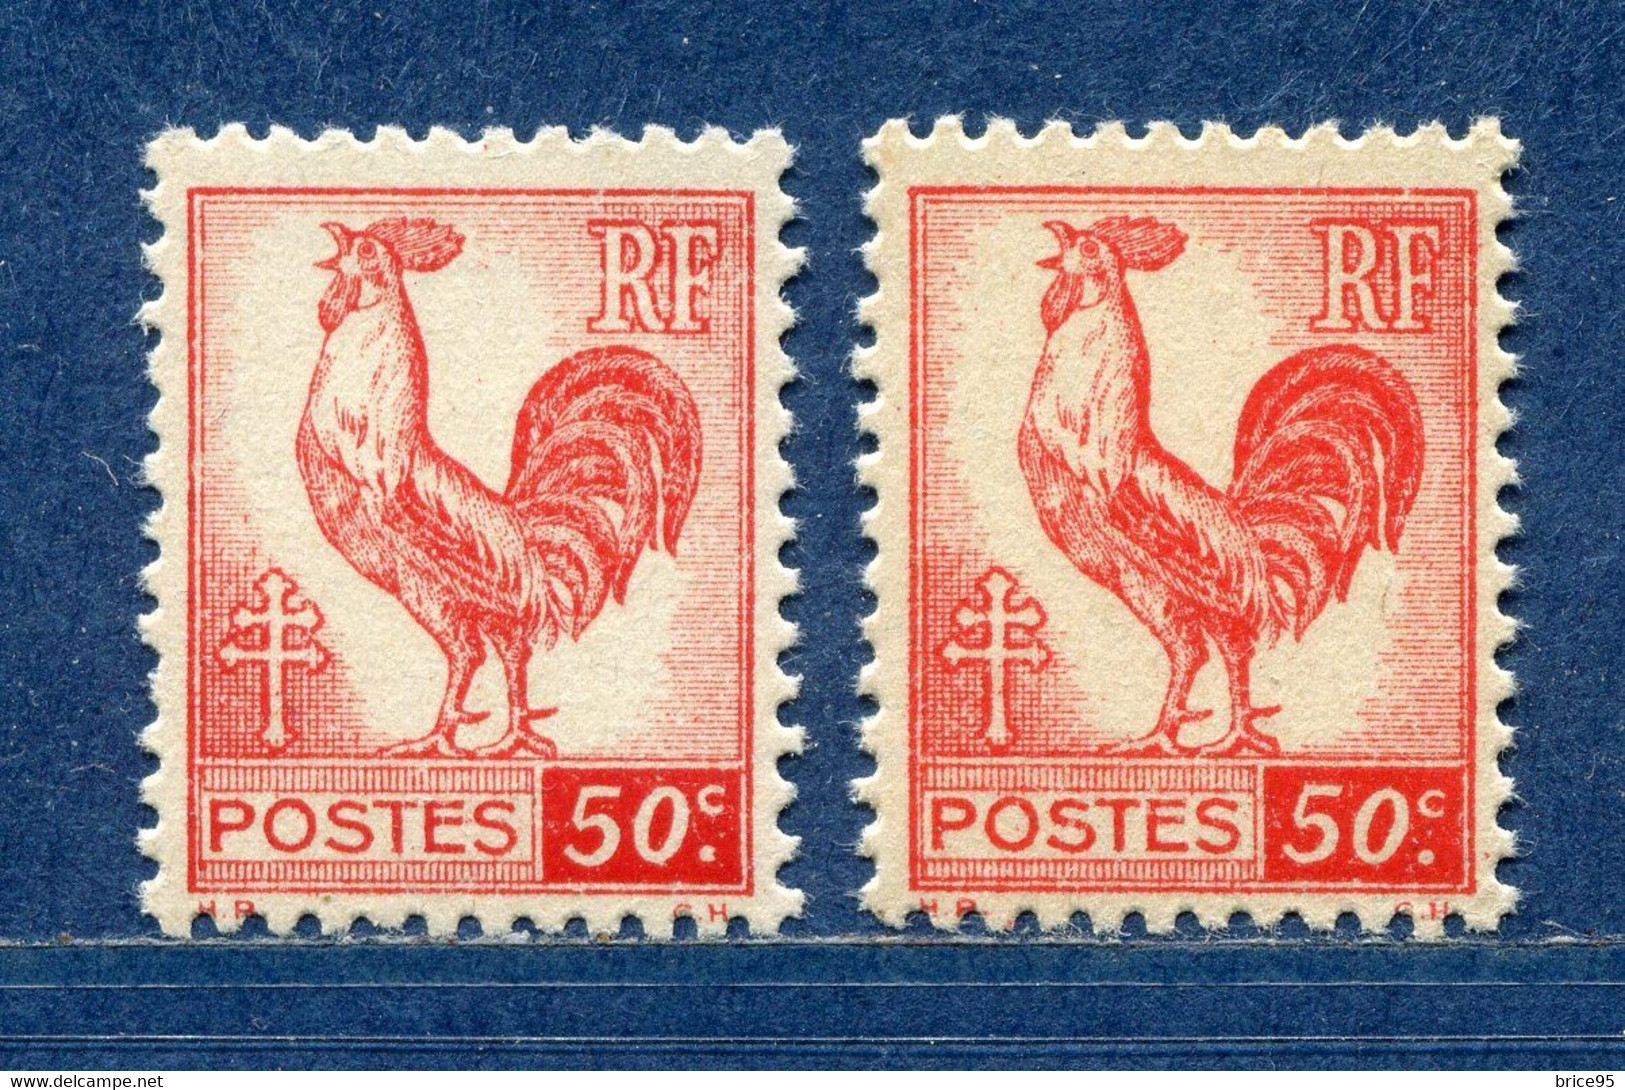 ⭐ France - Variété - YT N° 633 - Couleurs - Pétouilles - Neuf Sans Charnière - 1944 ⭐ - Unused Stamps